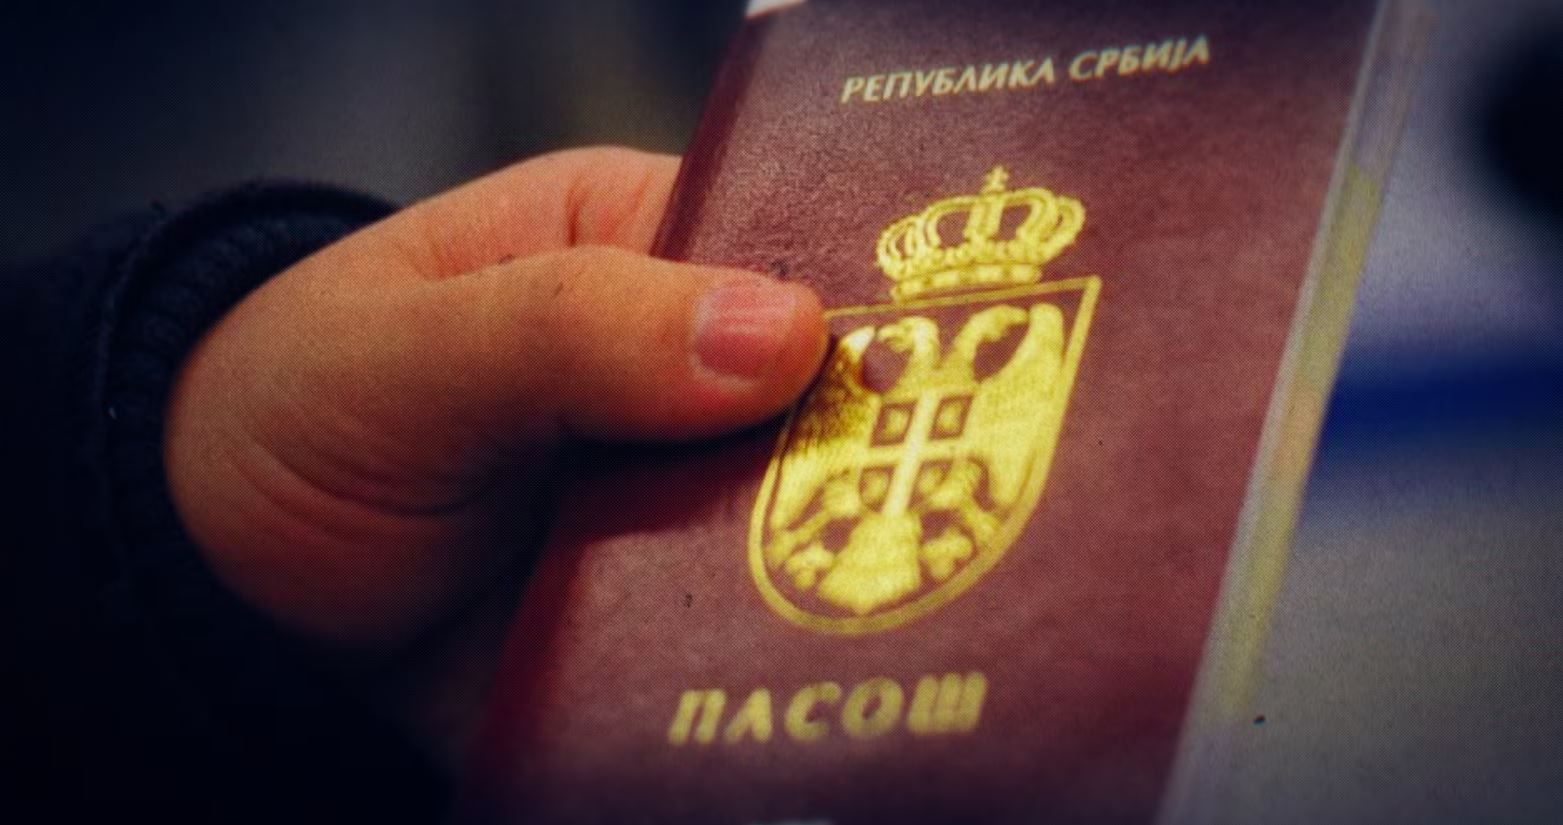 Komisioni i PE-së i hap rrugë liberalizimit të vizave për qytetarët e Kosovës me pasaporta serbe